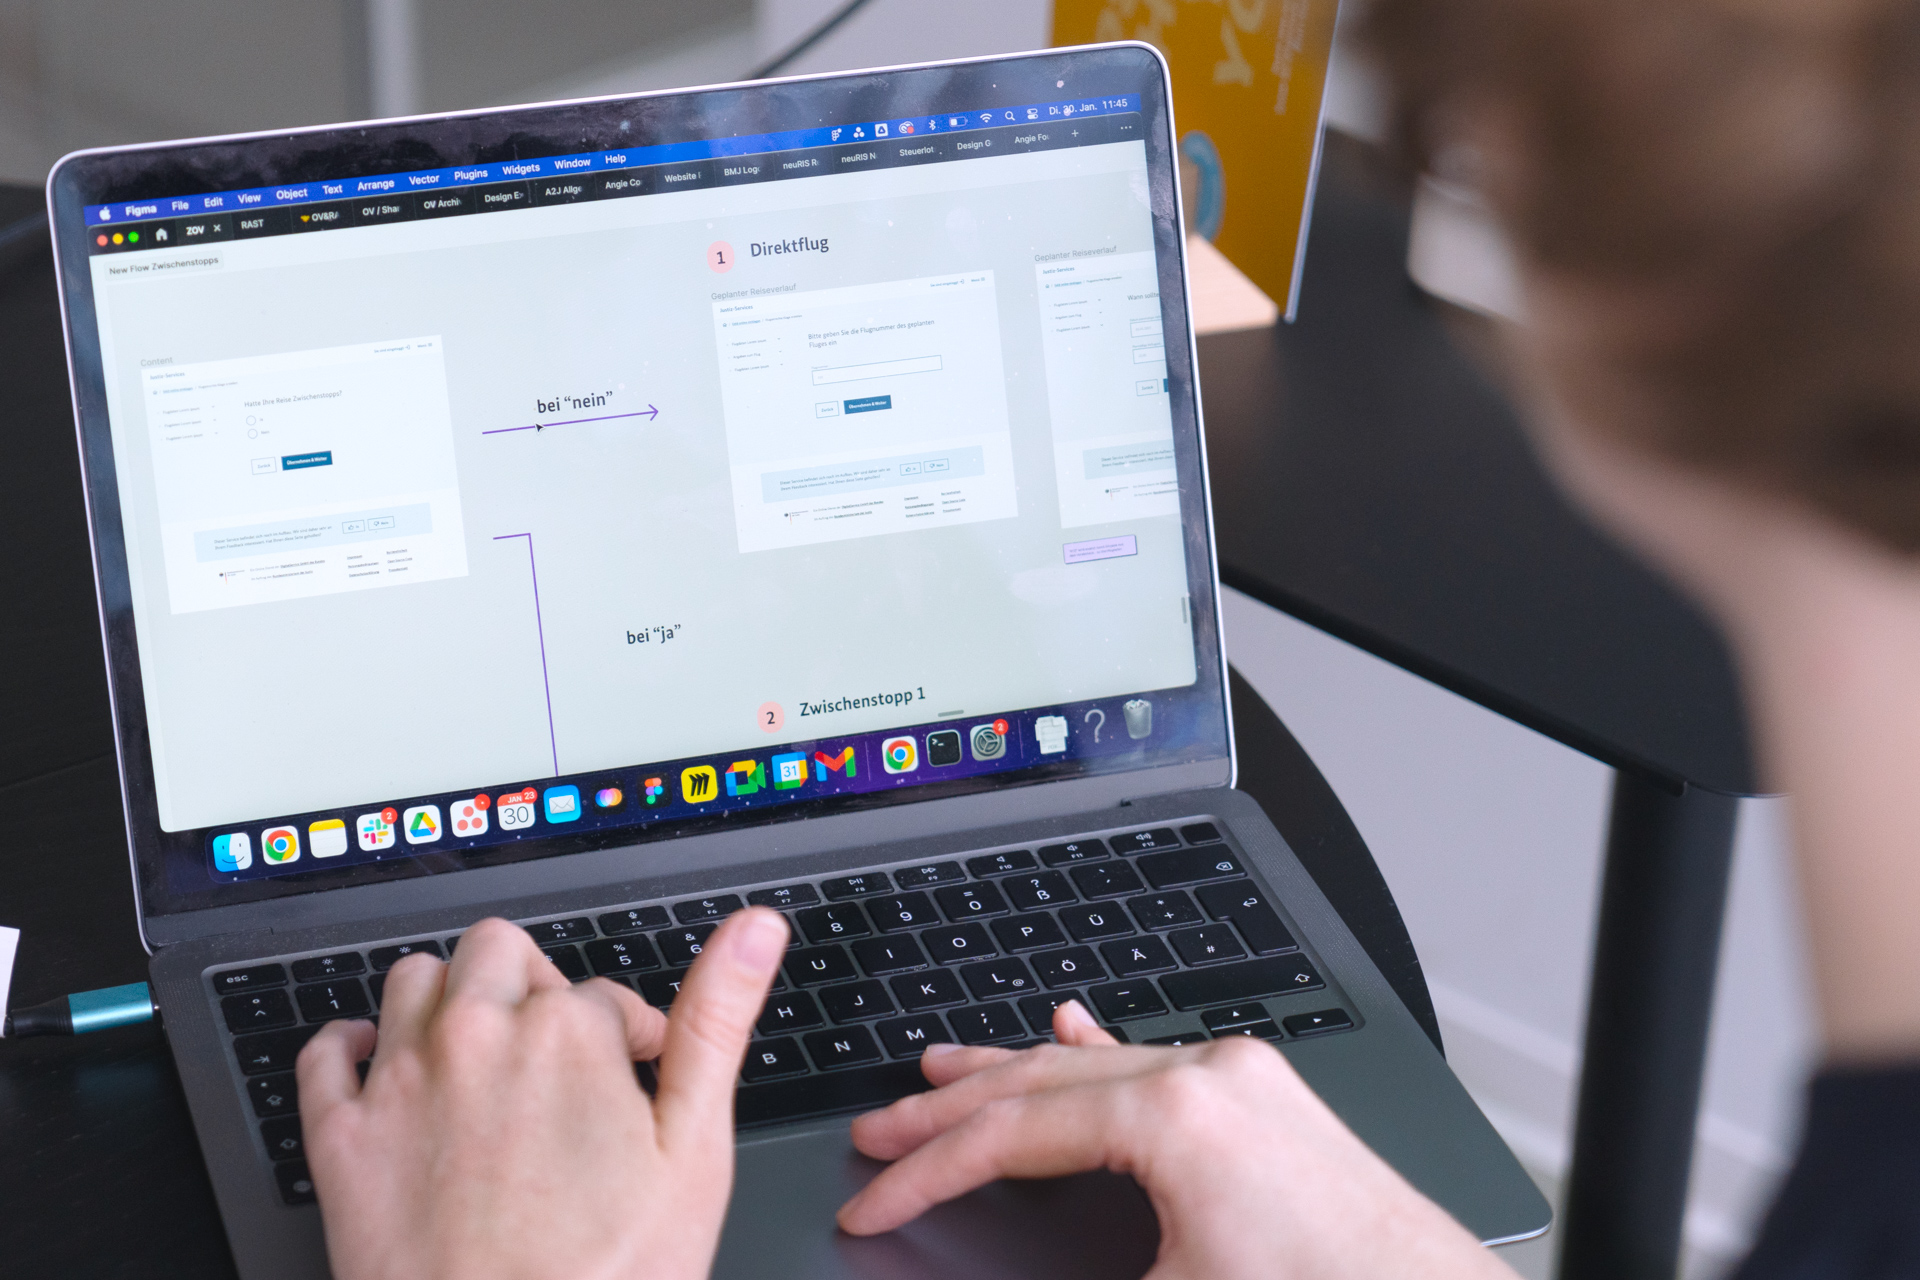 Eine Person wird im Anschnitt gezeigt, wie sie an ihrem Laptop arbeitet. Der Desktop zeigt eine Nutzendenreise für ein Online-Formular zu Fluggastrechten – Pfad 1 führt zu „Direktflug